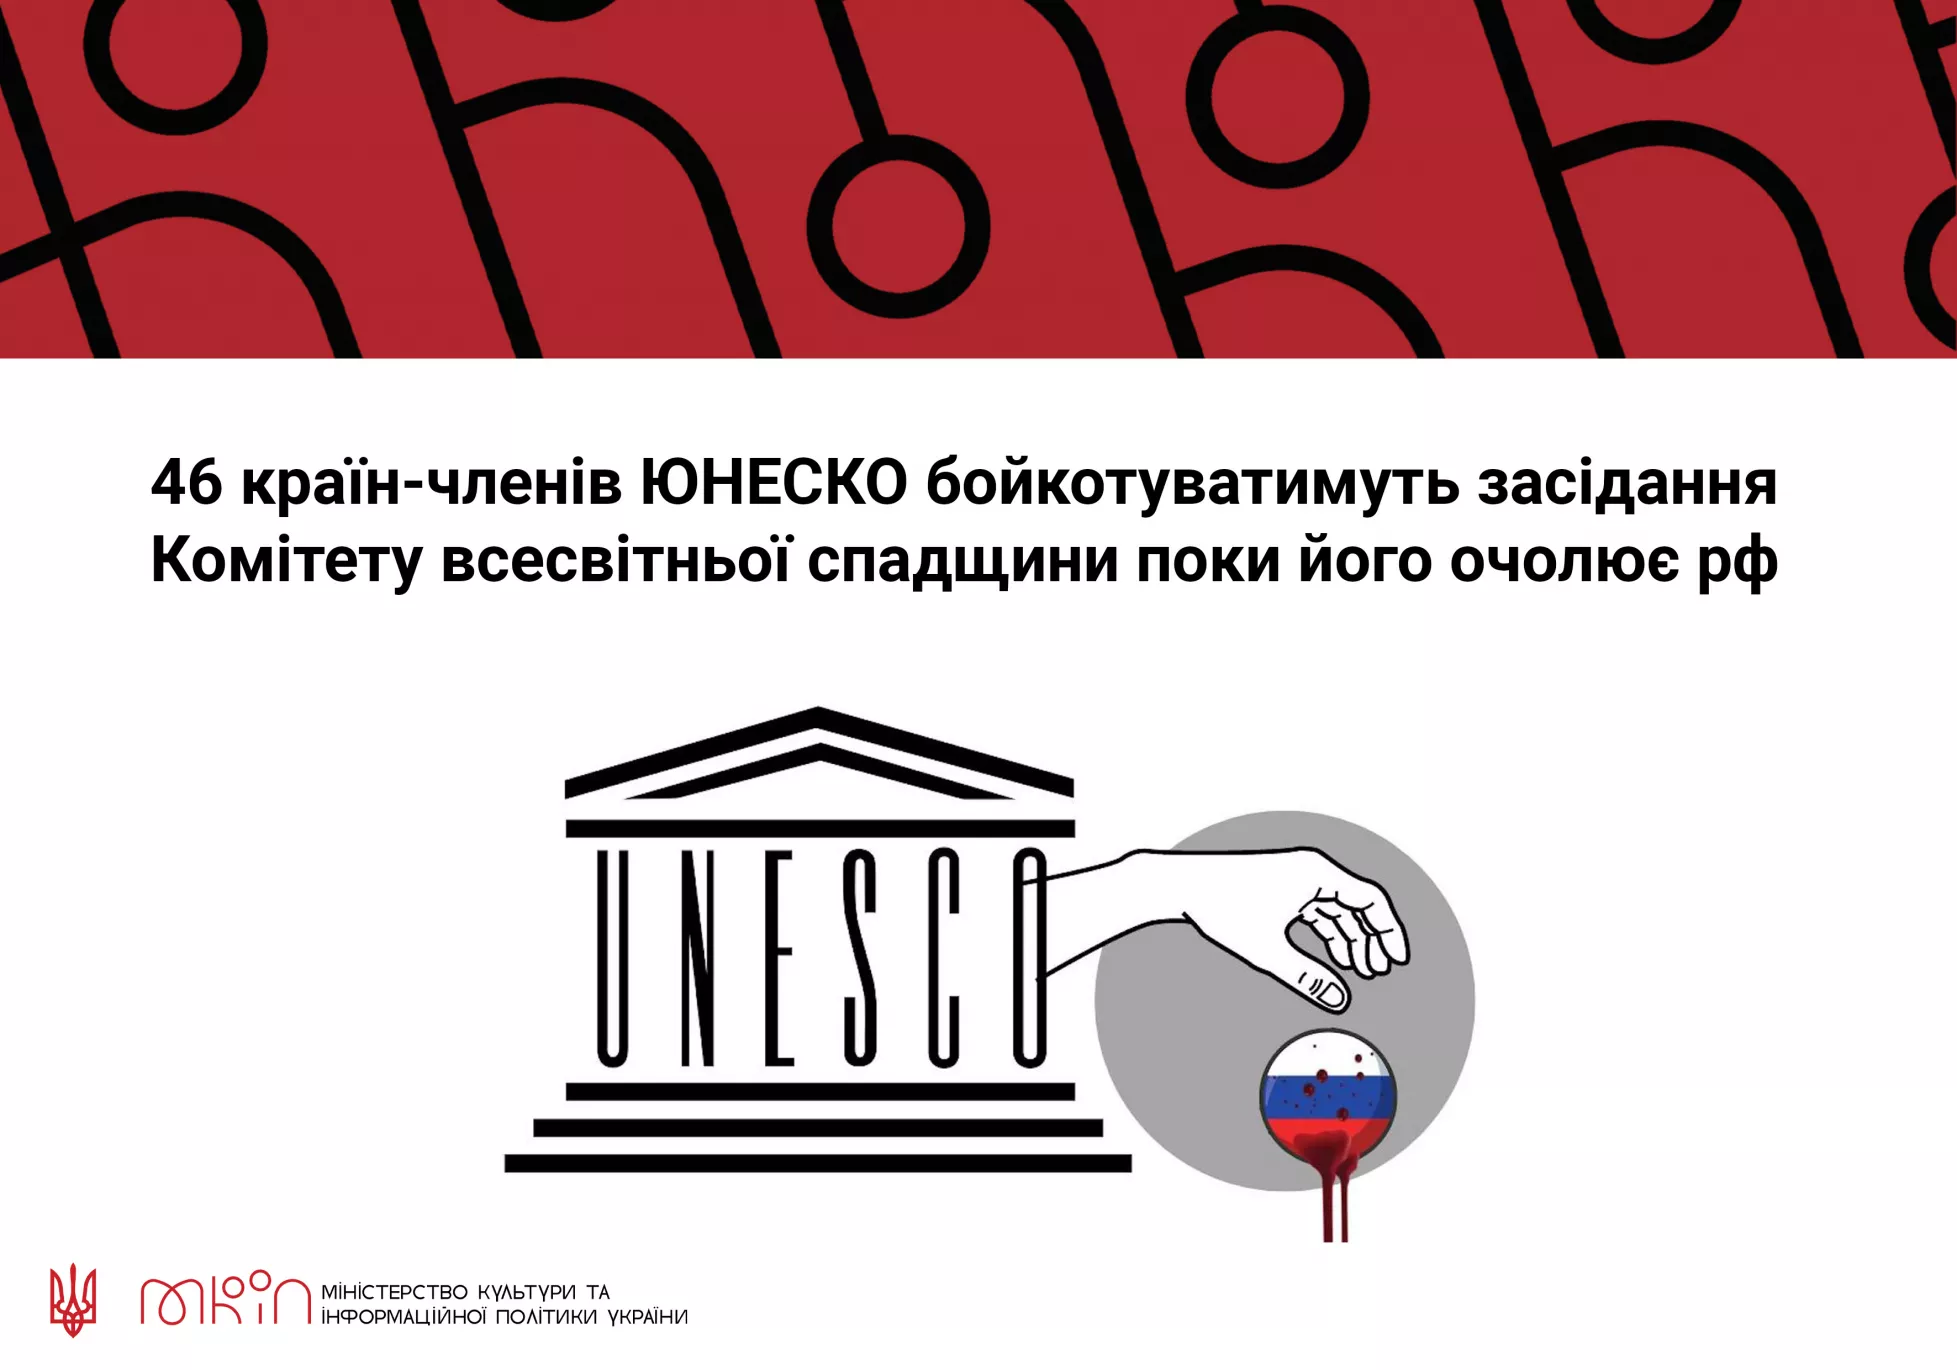 МКІП: 46 країн-членів ЮНЕСКО бойкотуватимуть комітет всесвітньої спадщини, поки його очолює Росія